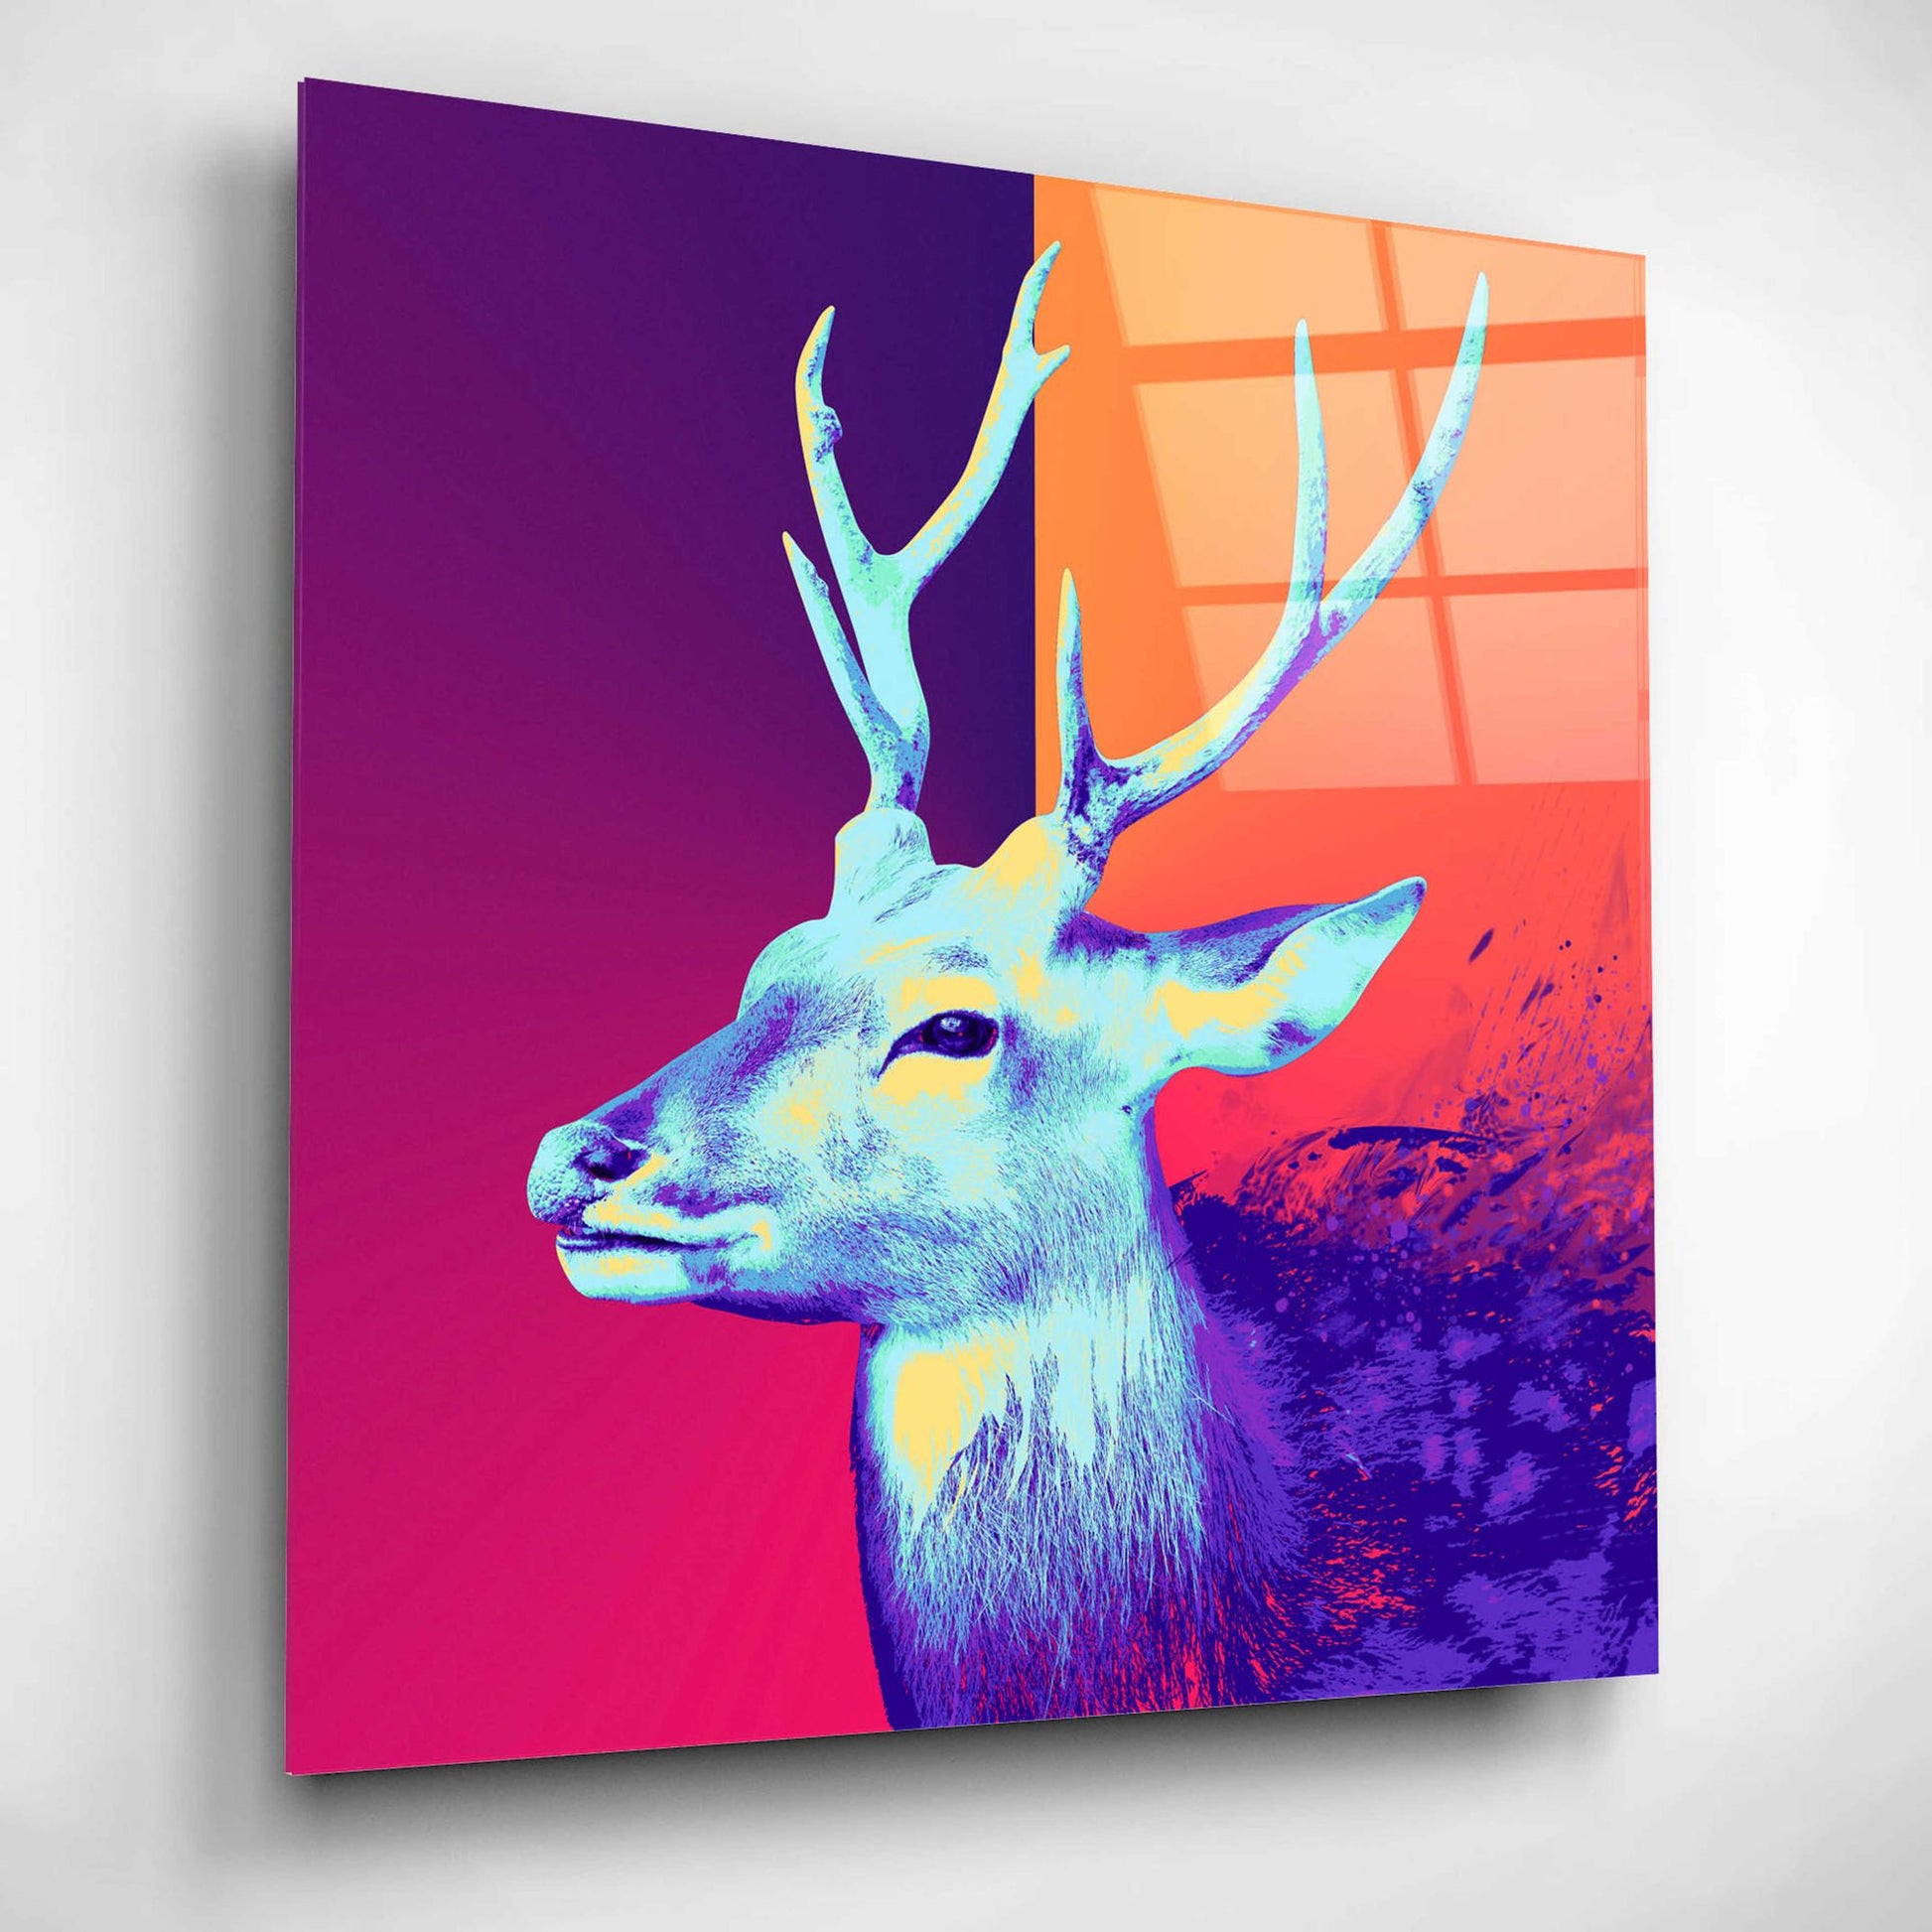 Epic Art 'A Deer', Acrylic Glass Wall Art,12x12